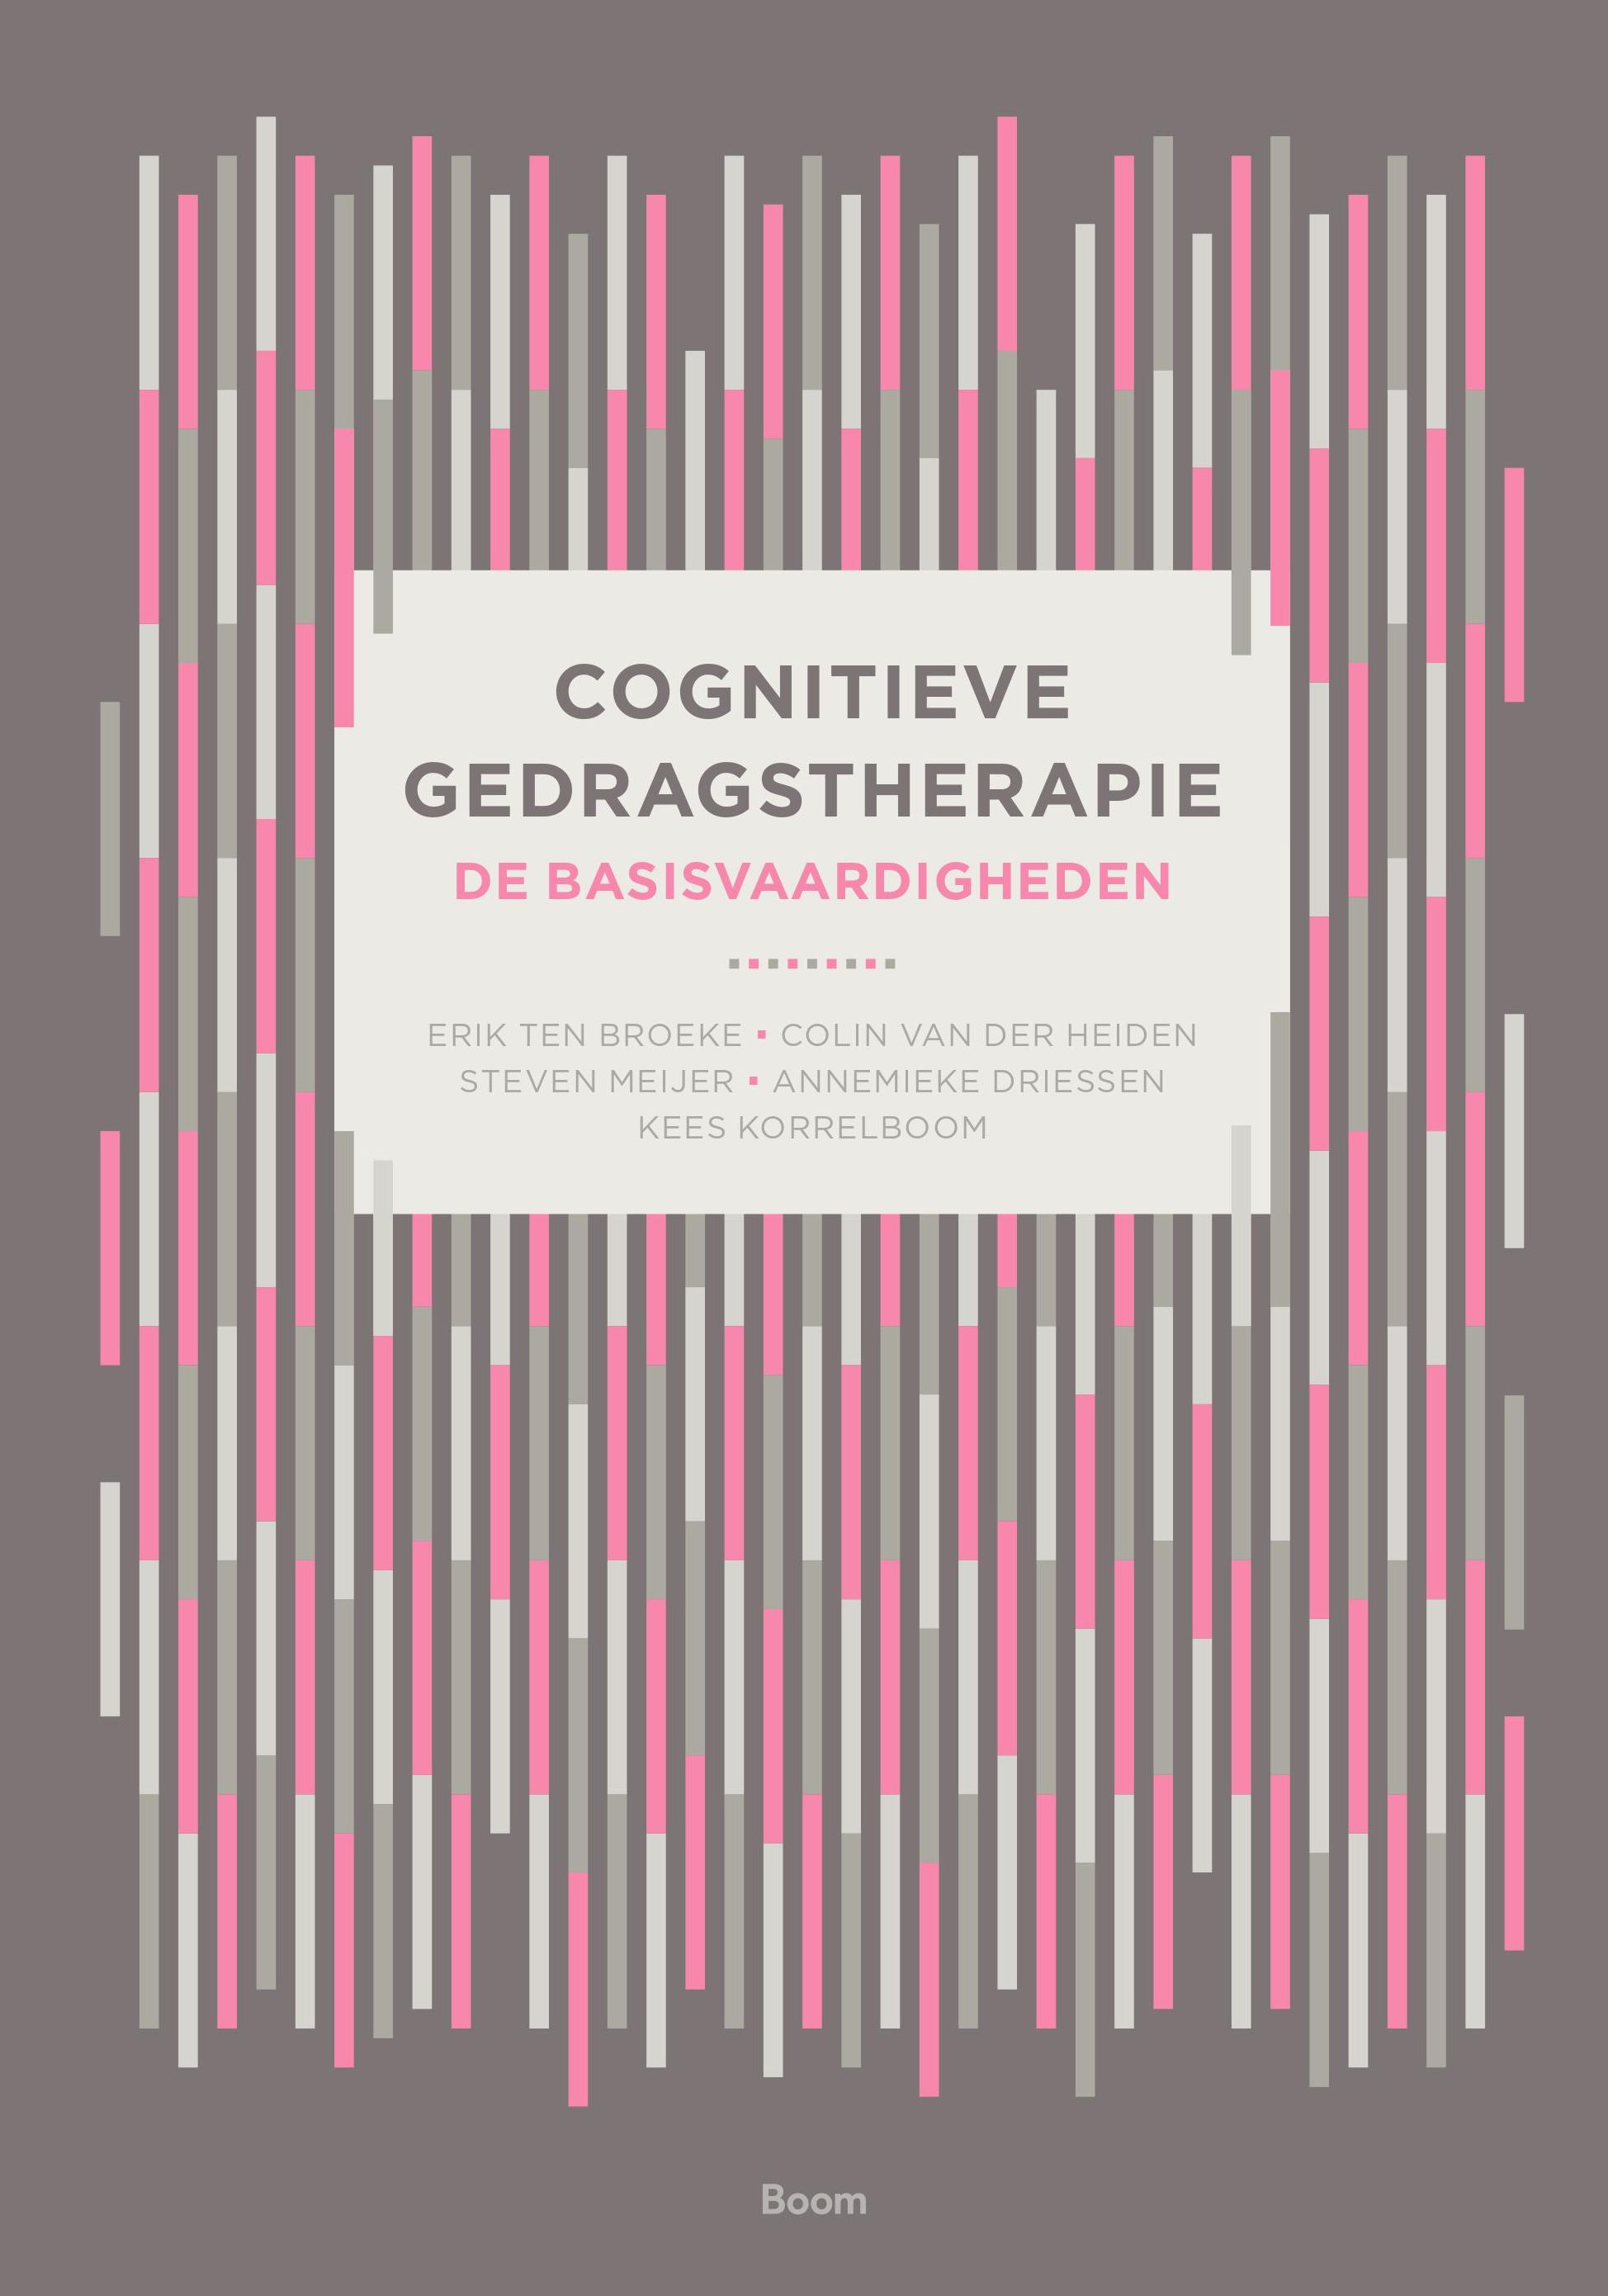 Cognitieve gedragstherapie: de basisvaardigheden